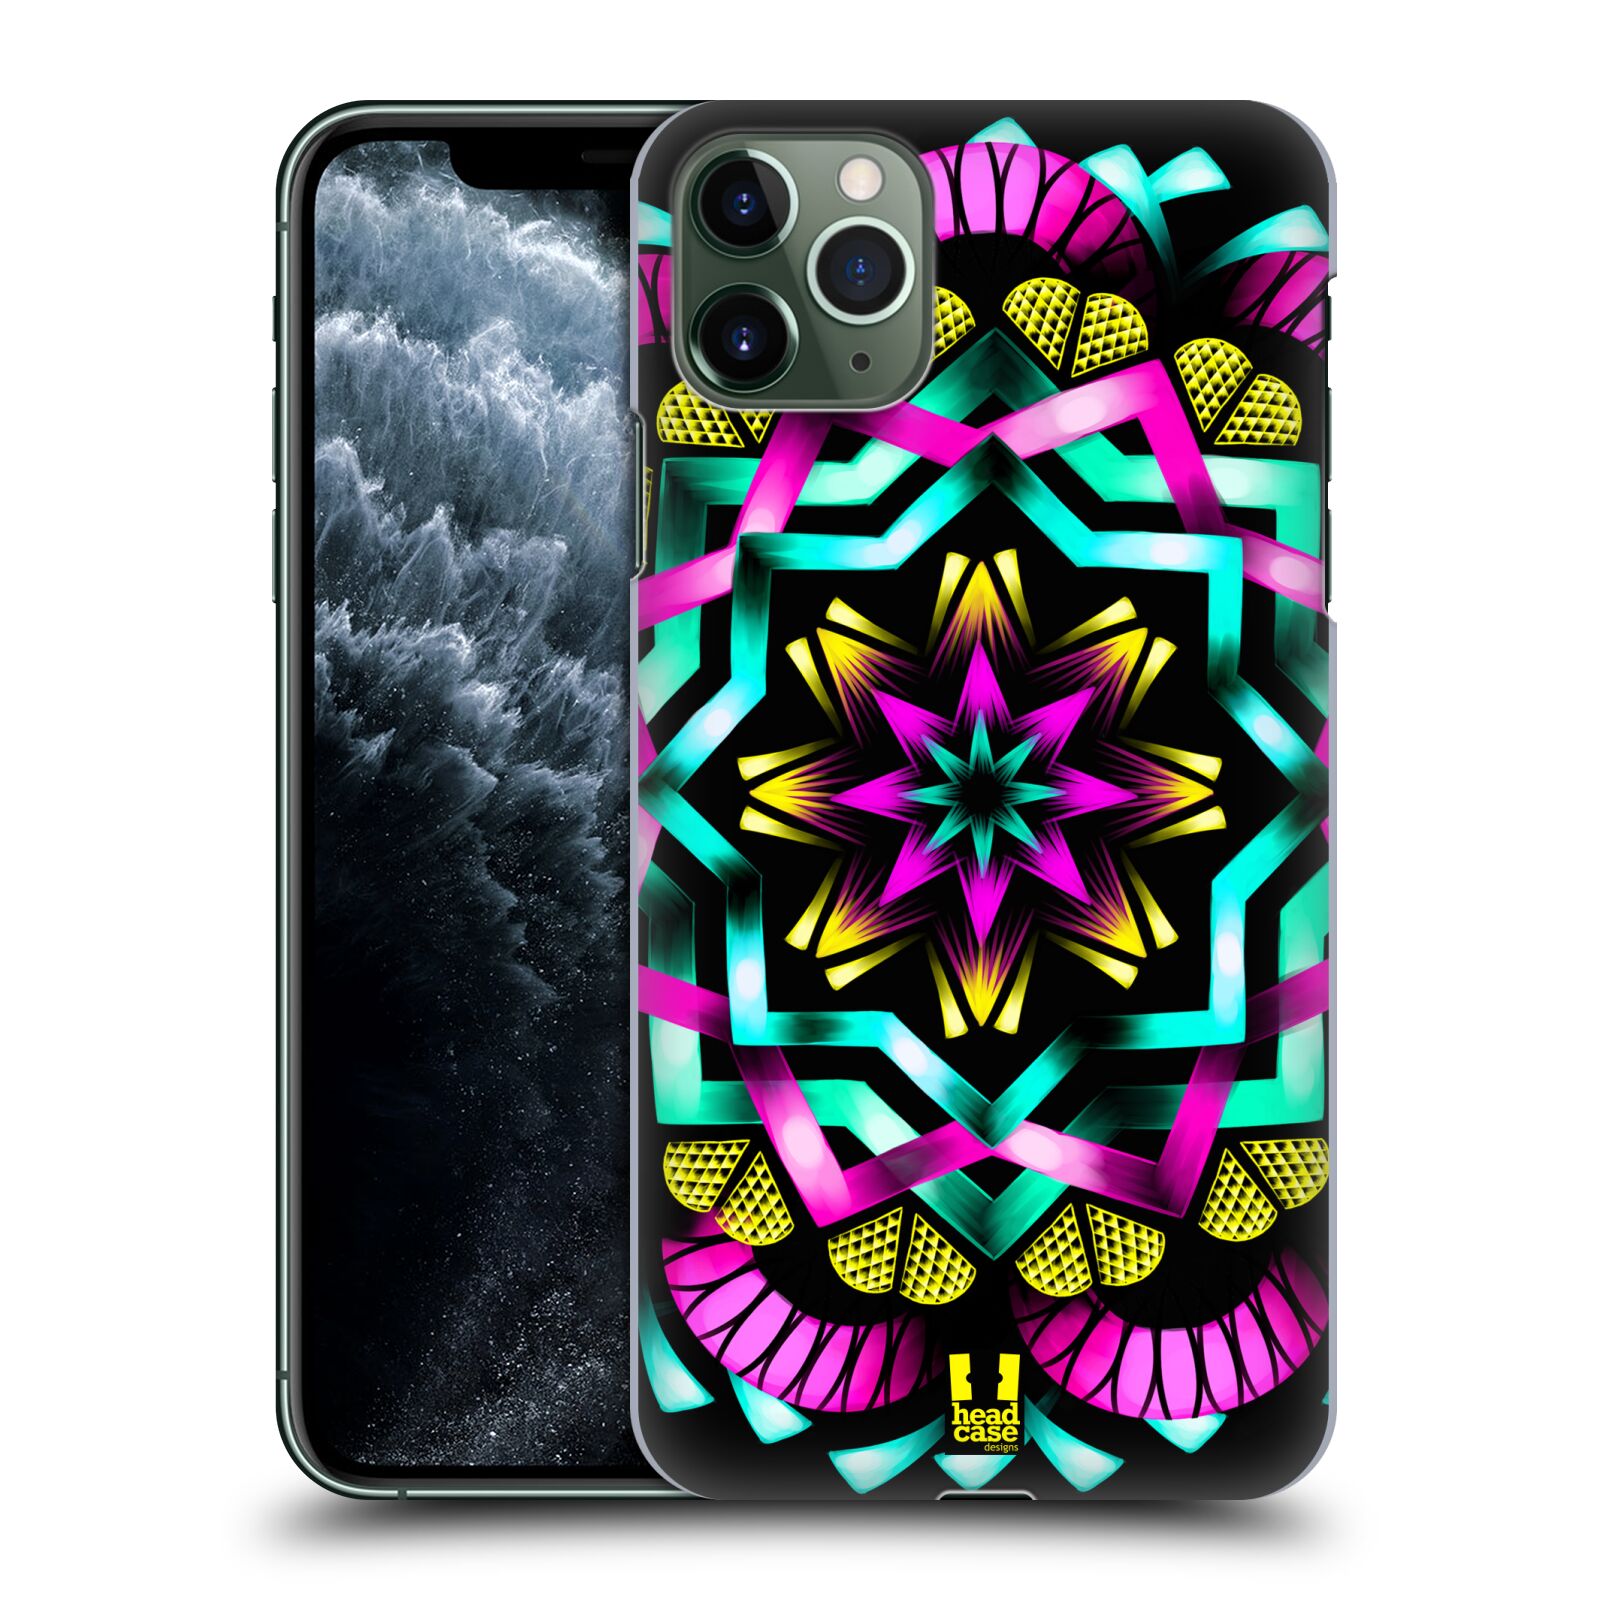 Pouzdro na mobil Apple Iphone 11 PRO MAX - HEAD CASE - vzor Indie Mandala kaleidoskop barevný vzor SLUNCE